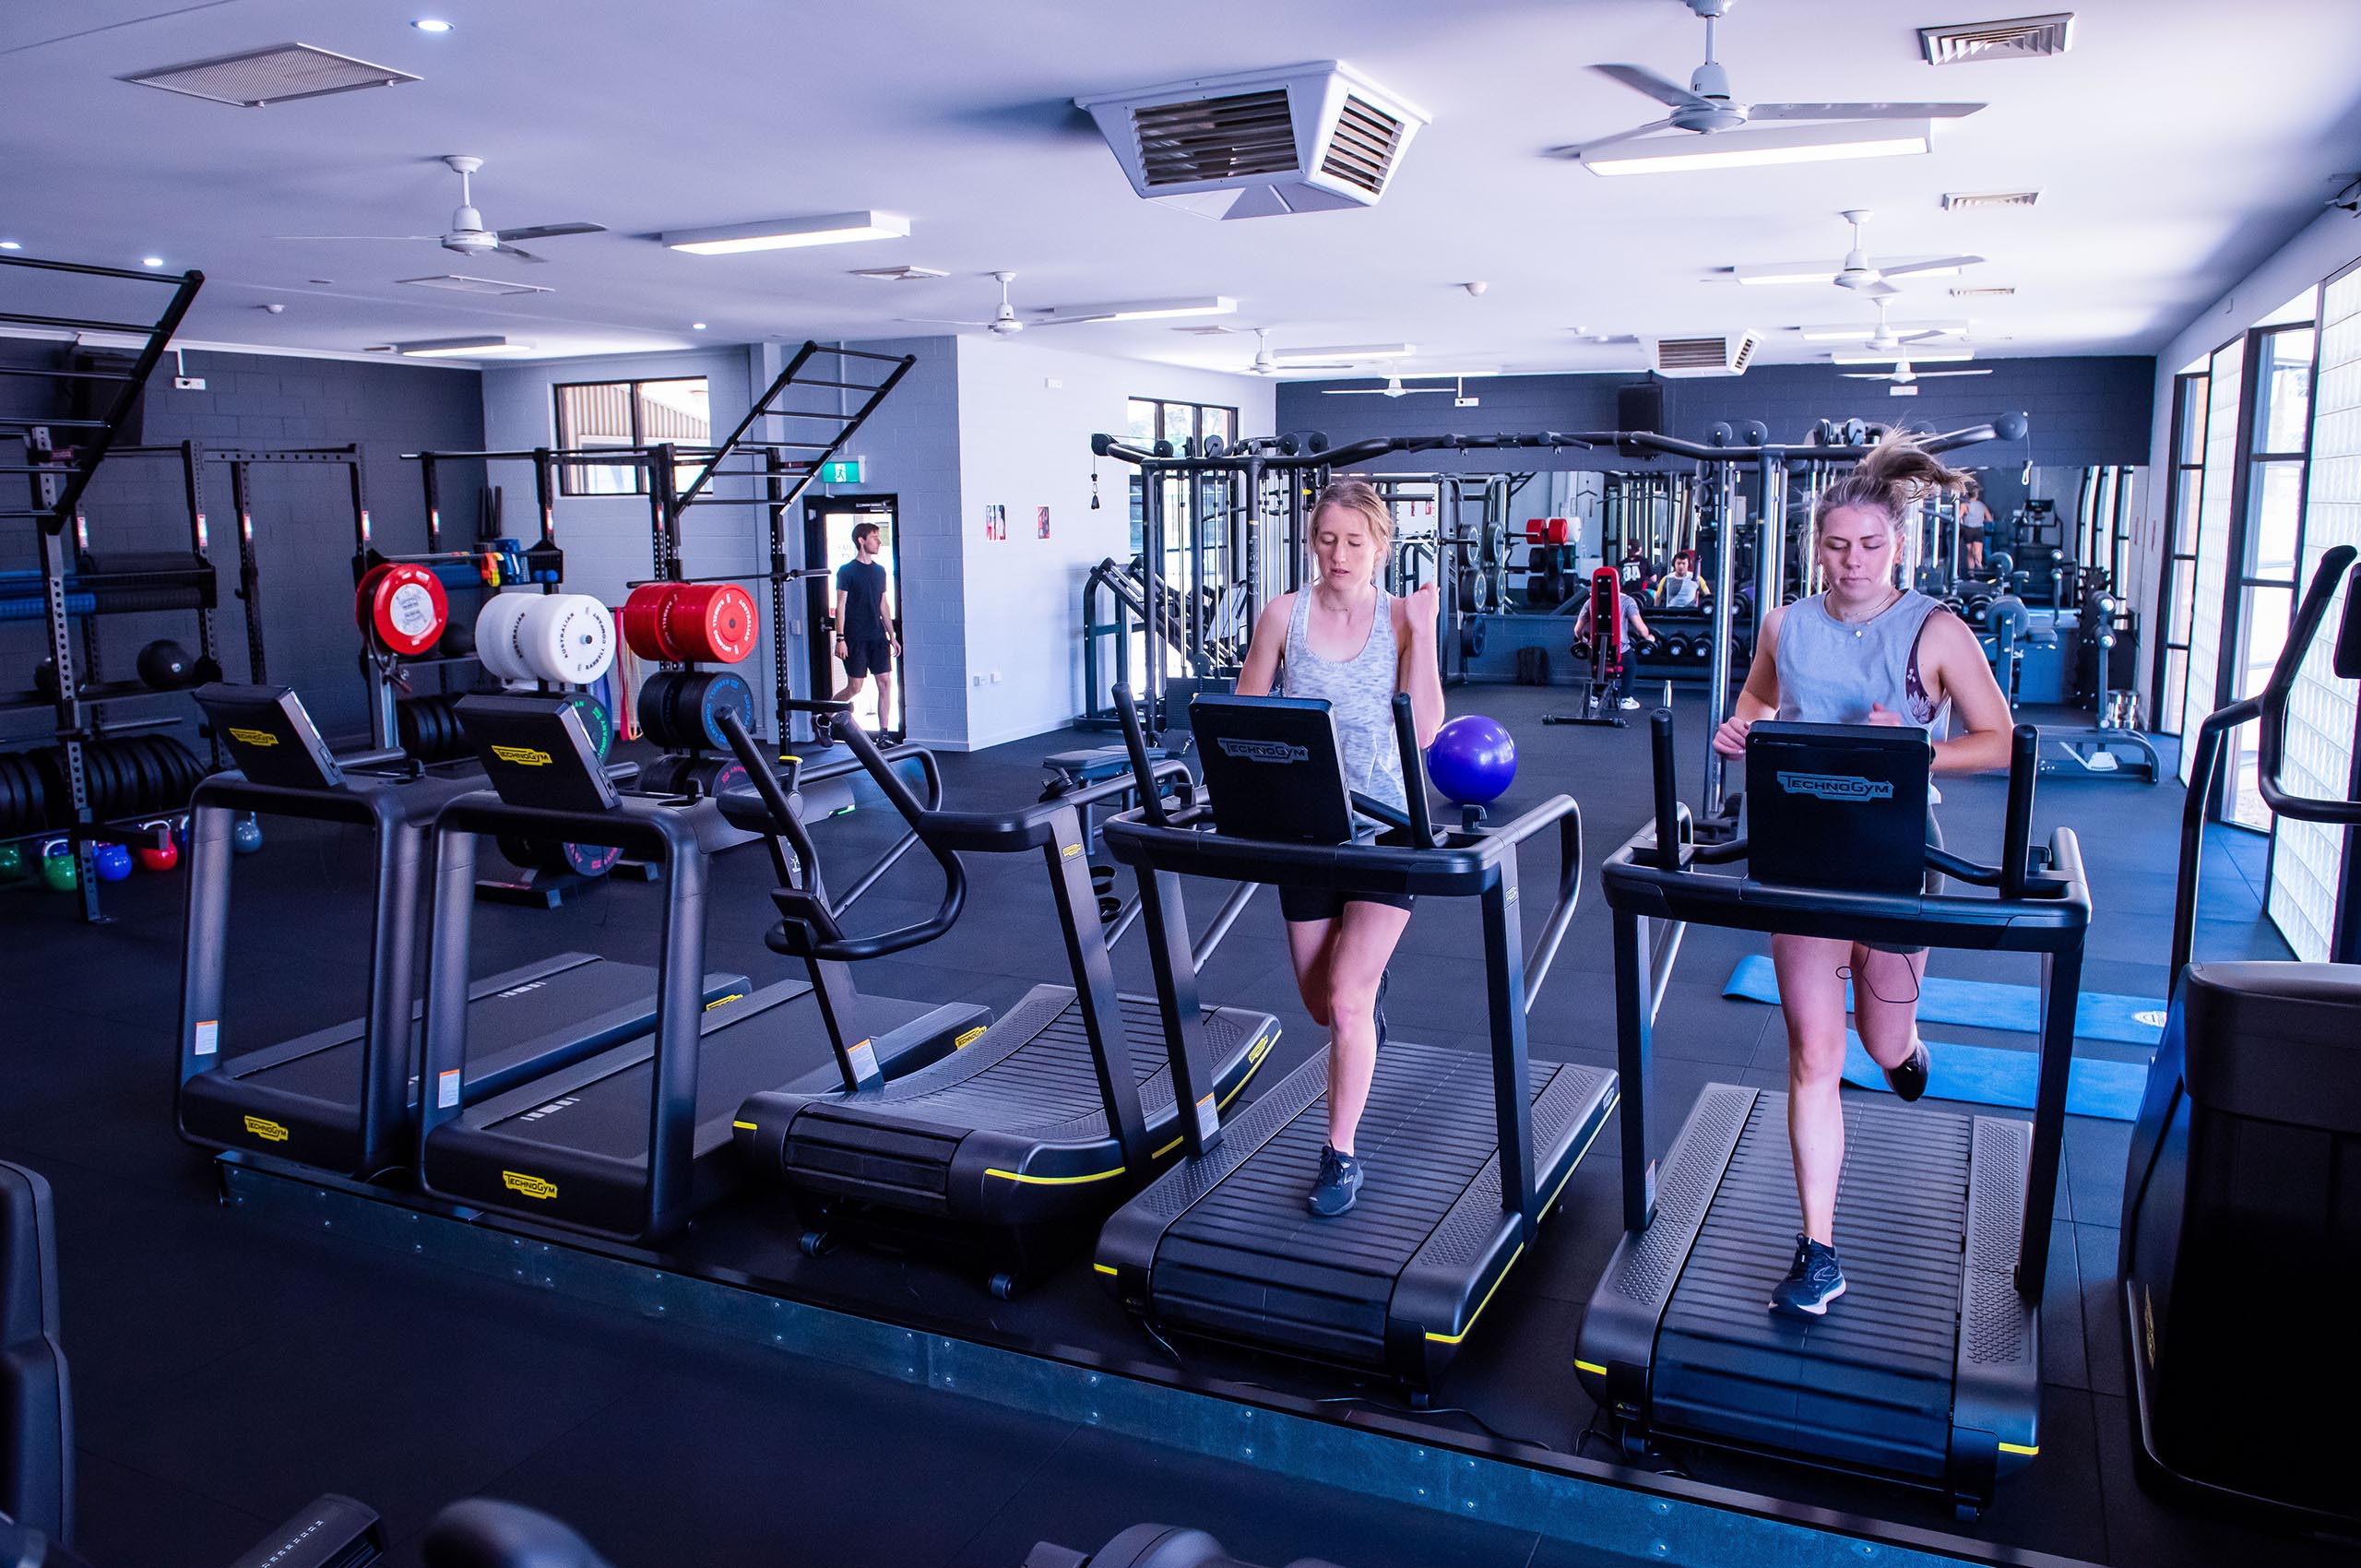 Bendigo Sports Centre - Full Gym View with Cardio Equipment